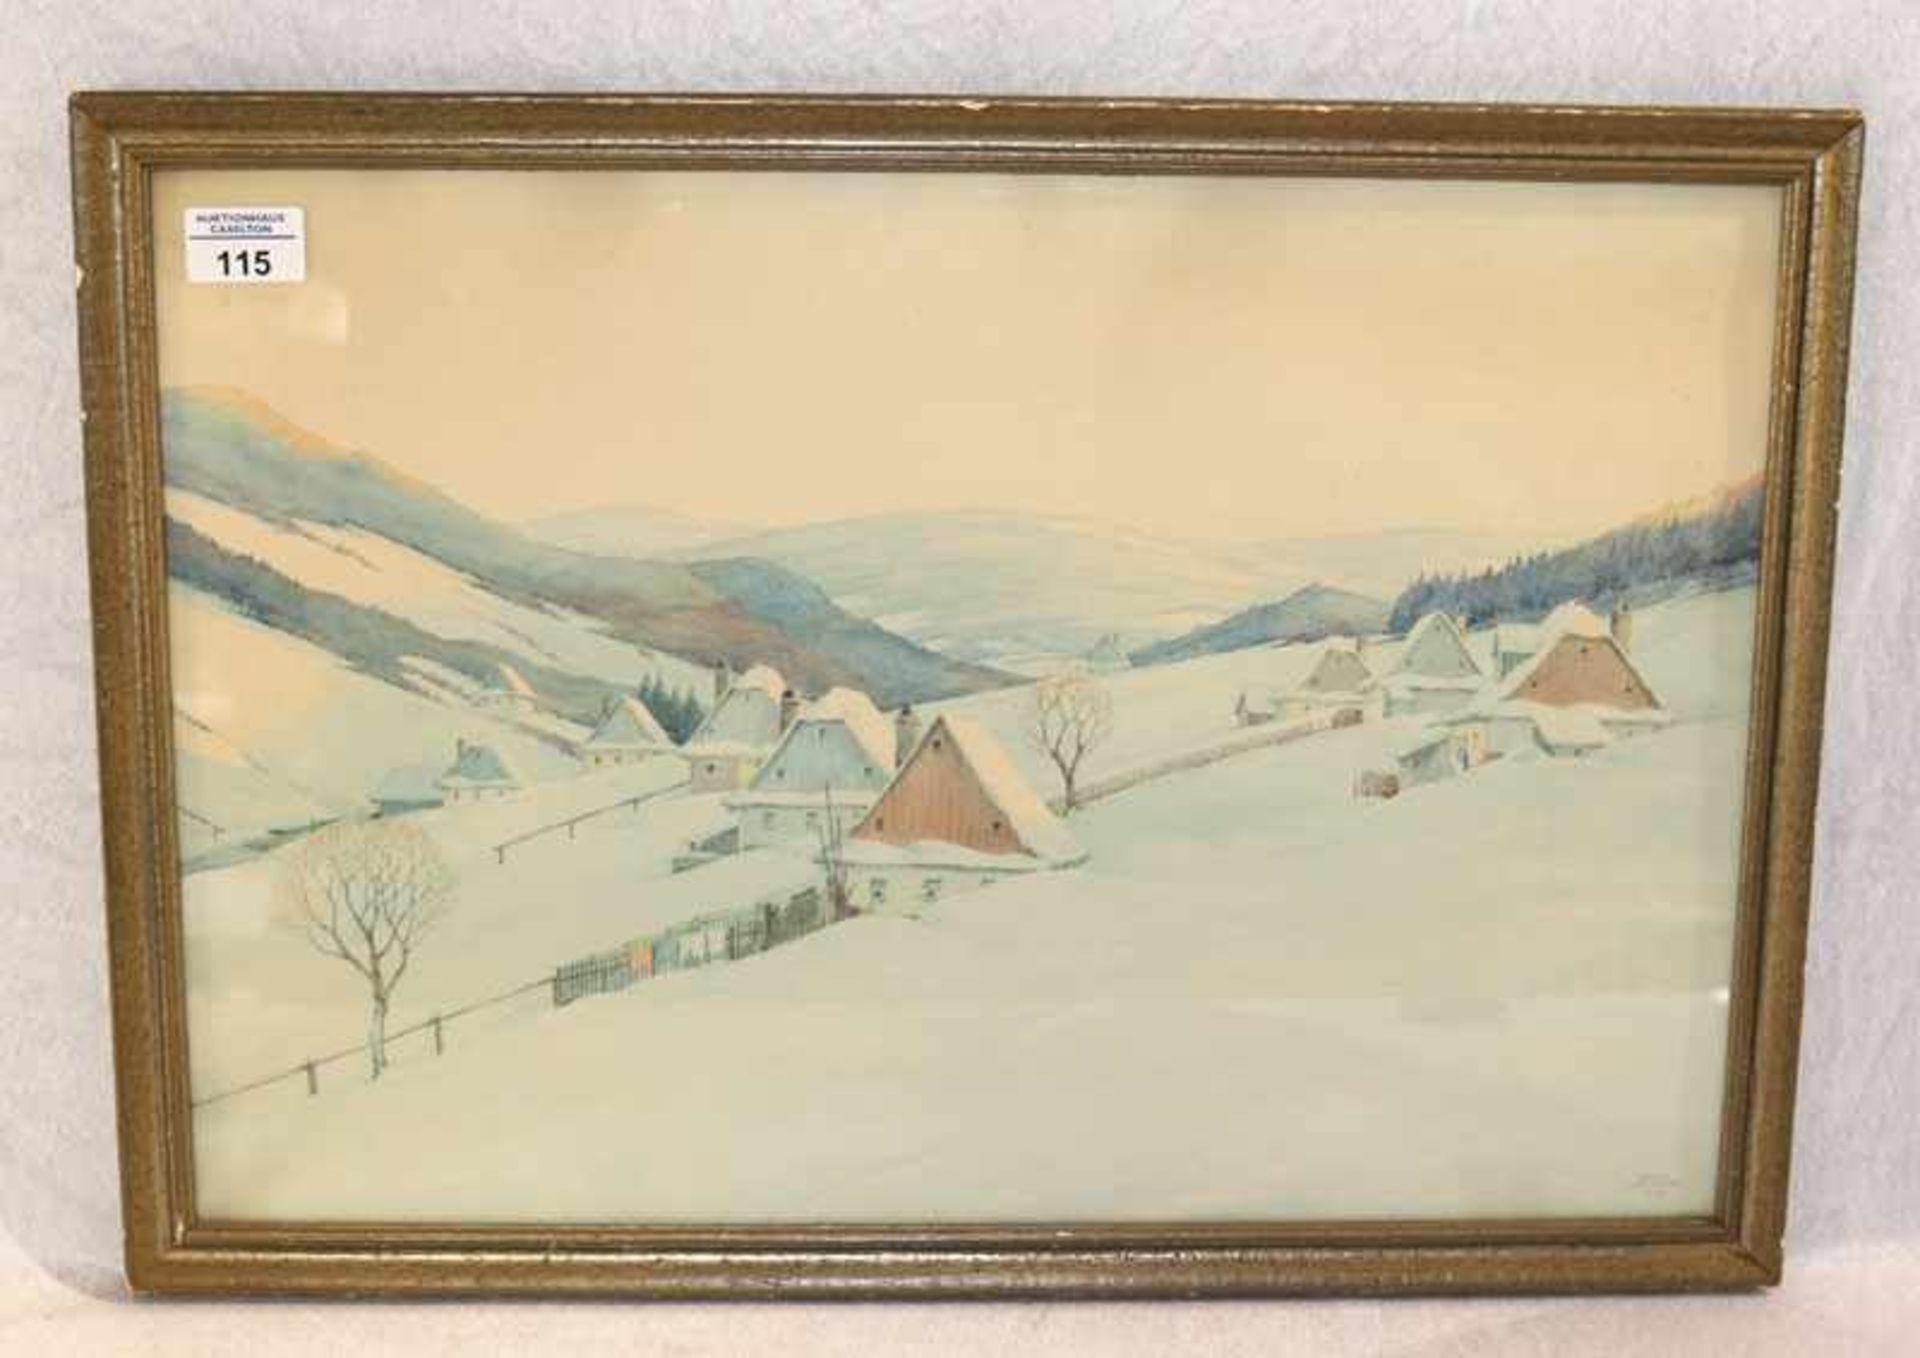 Aquarell 'Winterlandschaft mit Häuser', signiert Egon Lennert, datiert 1947, unter Glas gerahmt,